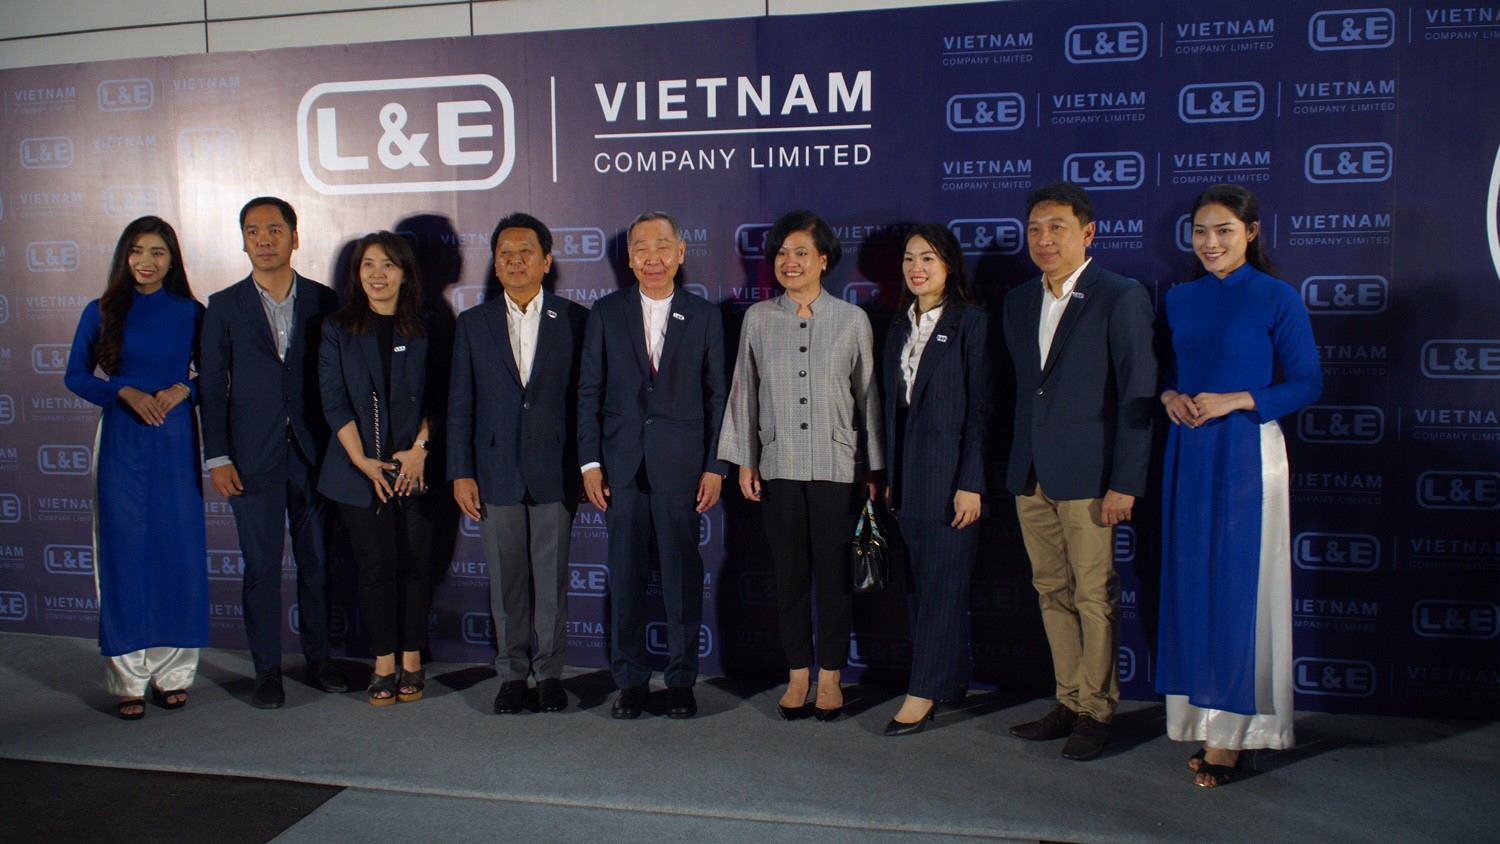 Ban lãnh đạo L&E chụp hình lưu niệm tại sự kiện ra mắt Công ty TNHH Lighting & Equipment (Việt Nam).